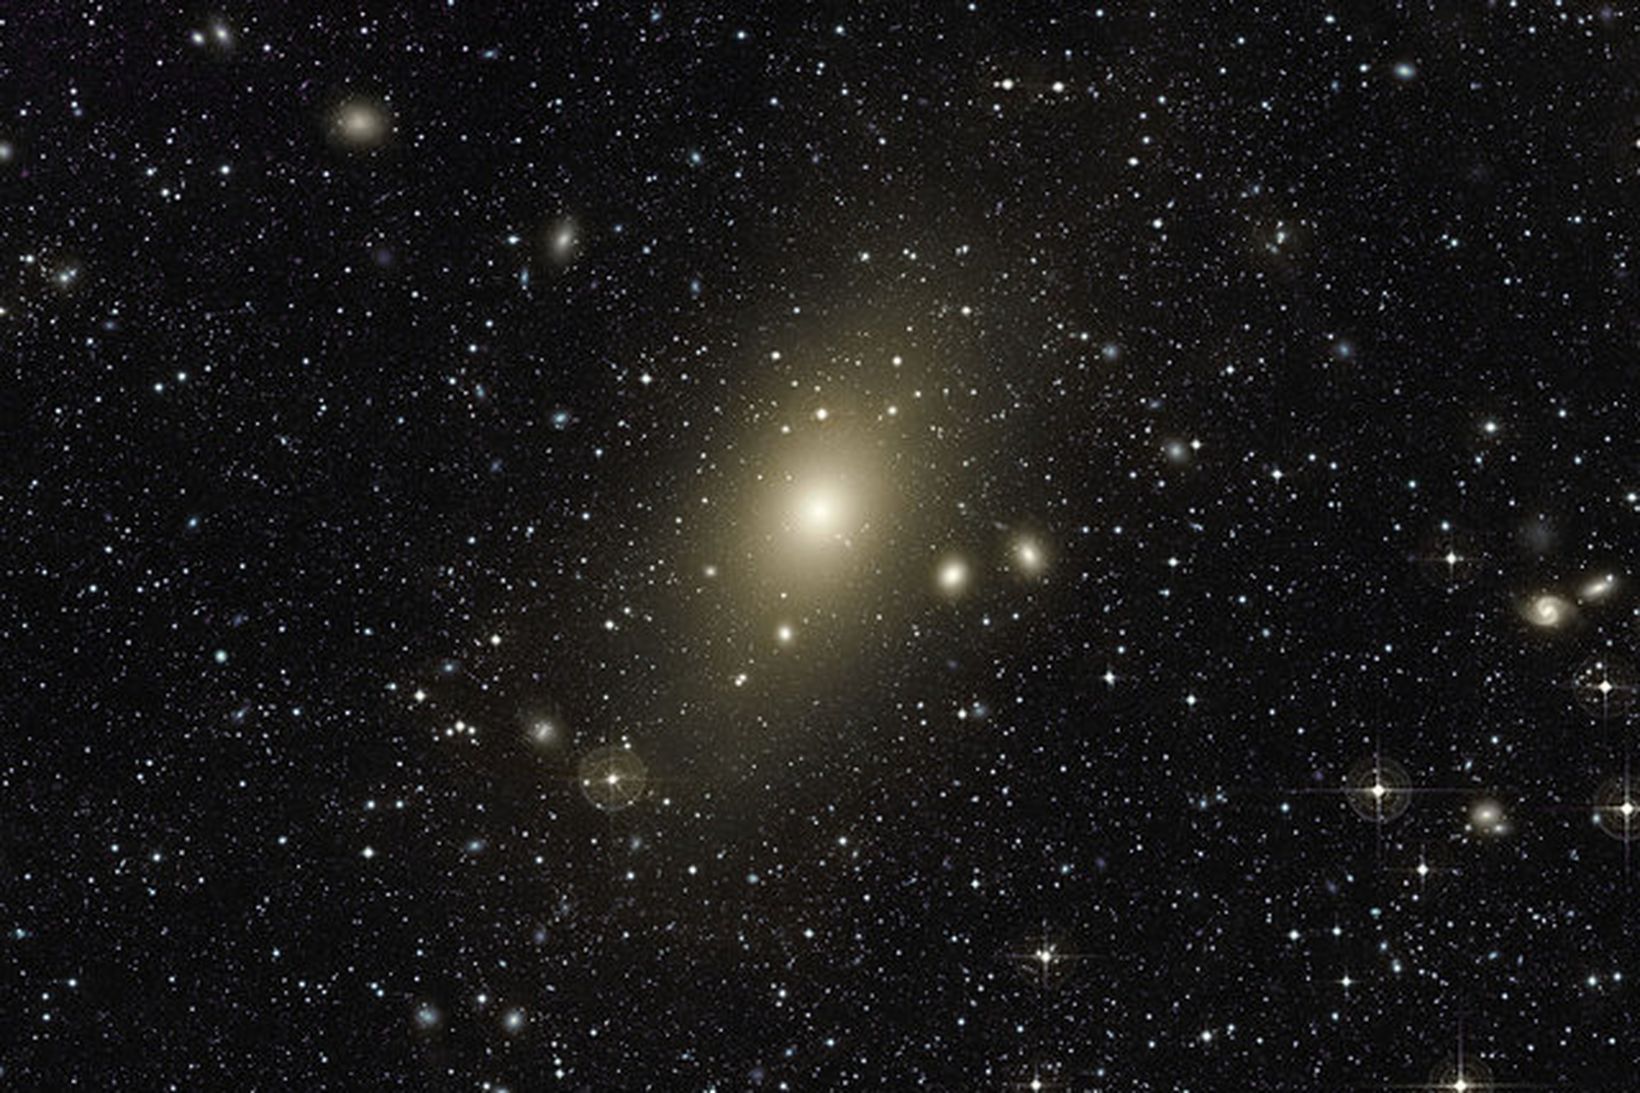 Djúpmynd af stórum geislabaug utan um Messier 87.